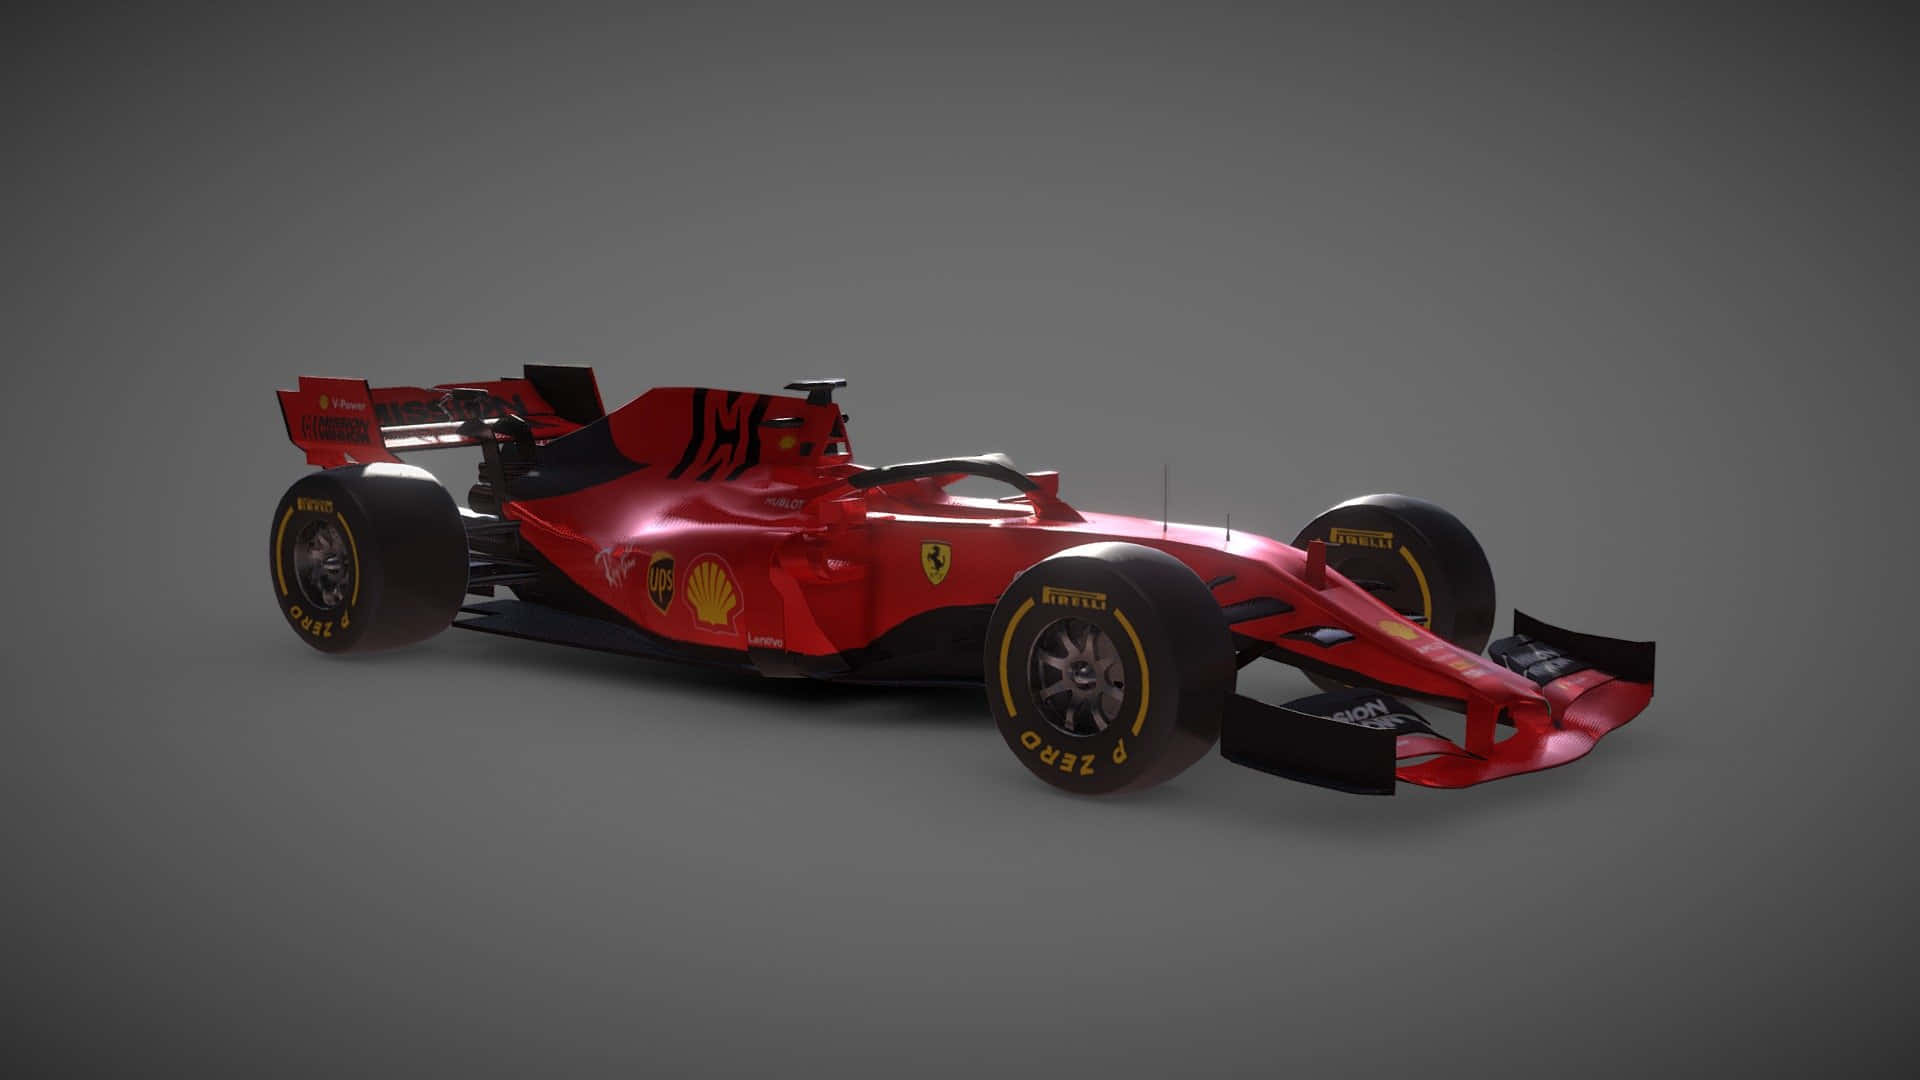 Ferrari Fr1 2019 Grayscale Hd Background